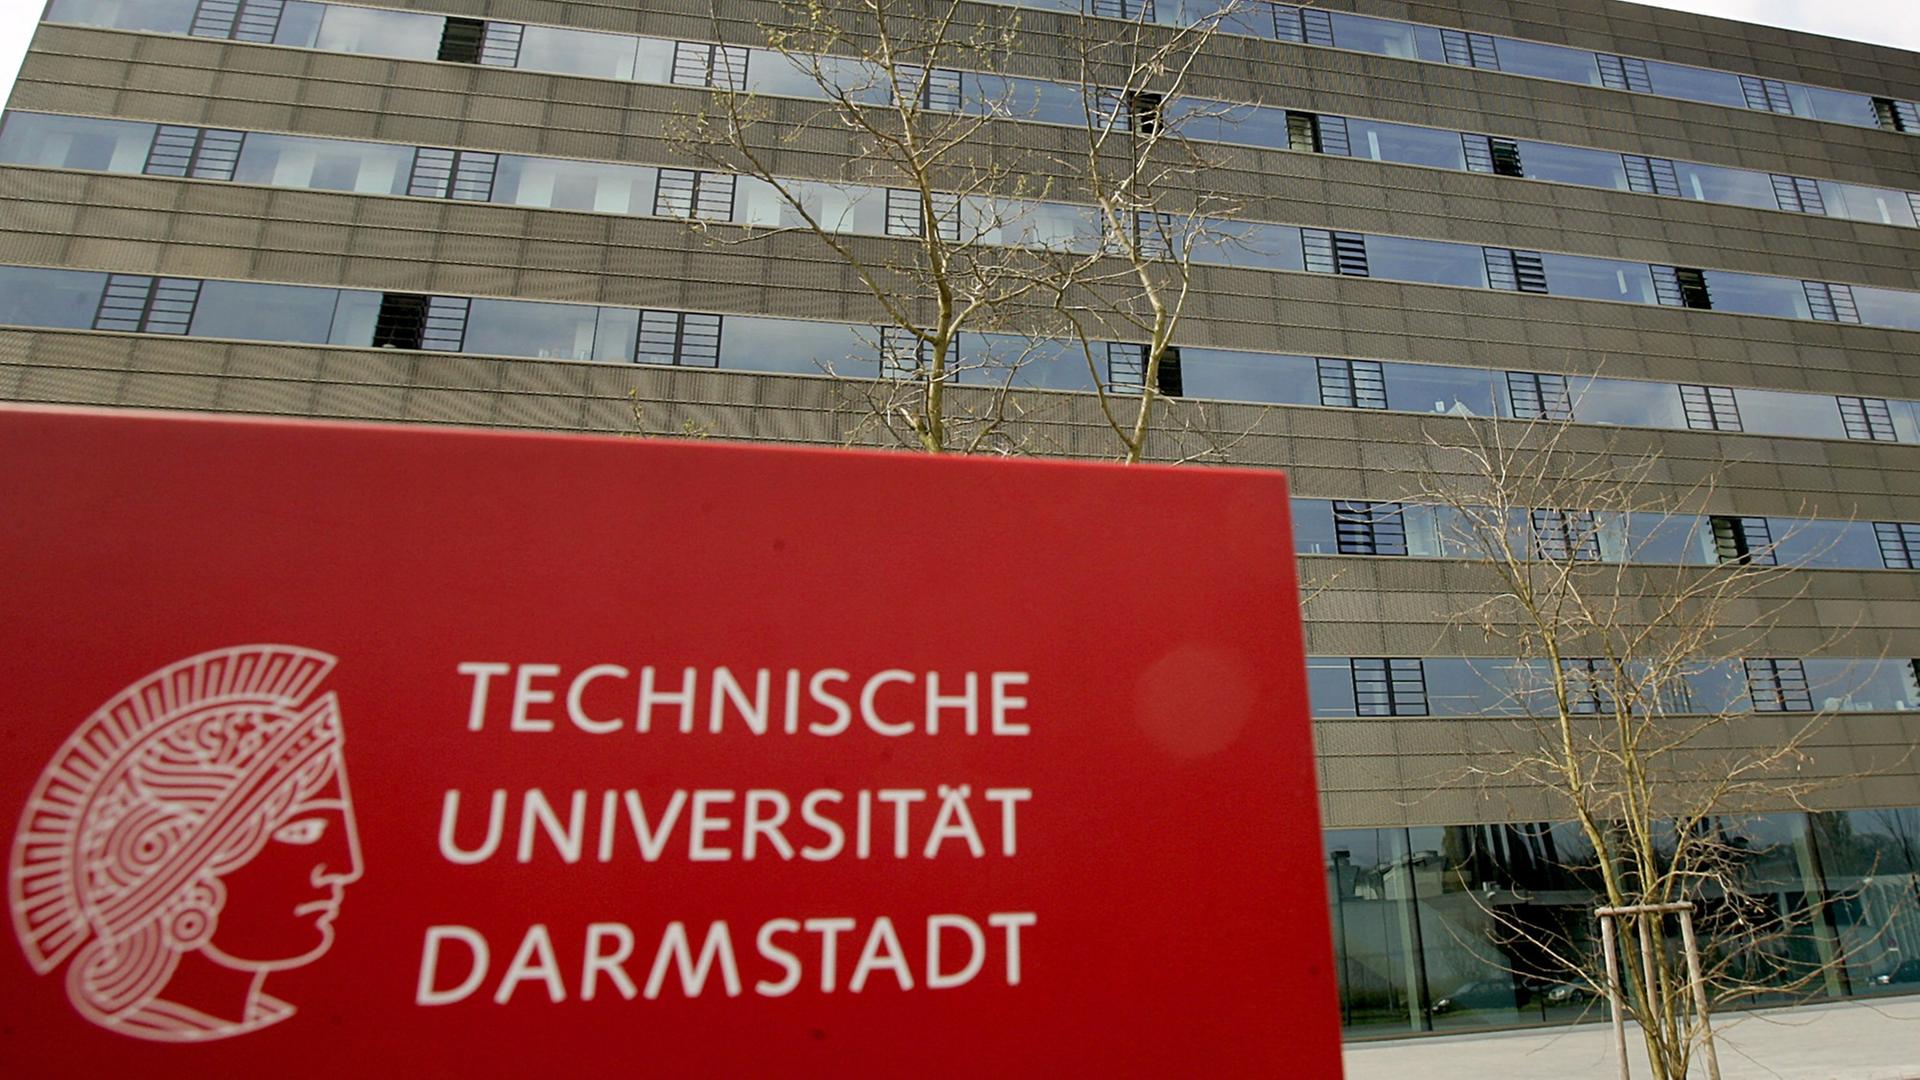 Rotes Schild mit der Aufschrift "Technische Universität Darmstadt" vor einem großen Gebäude.